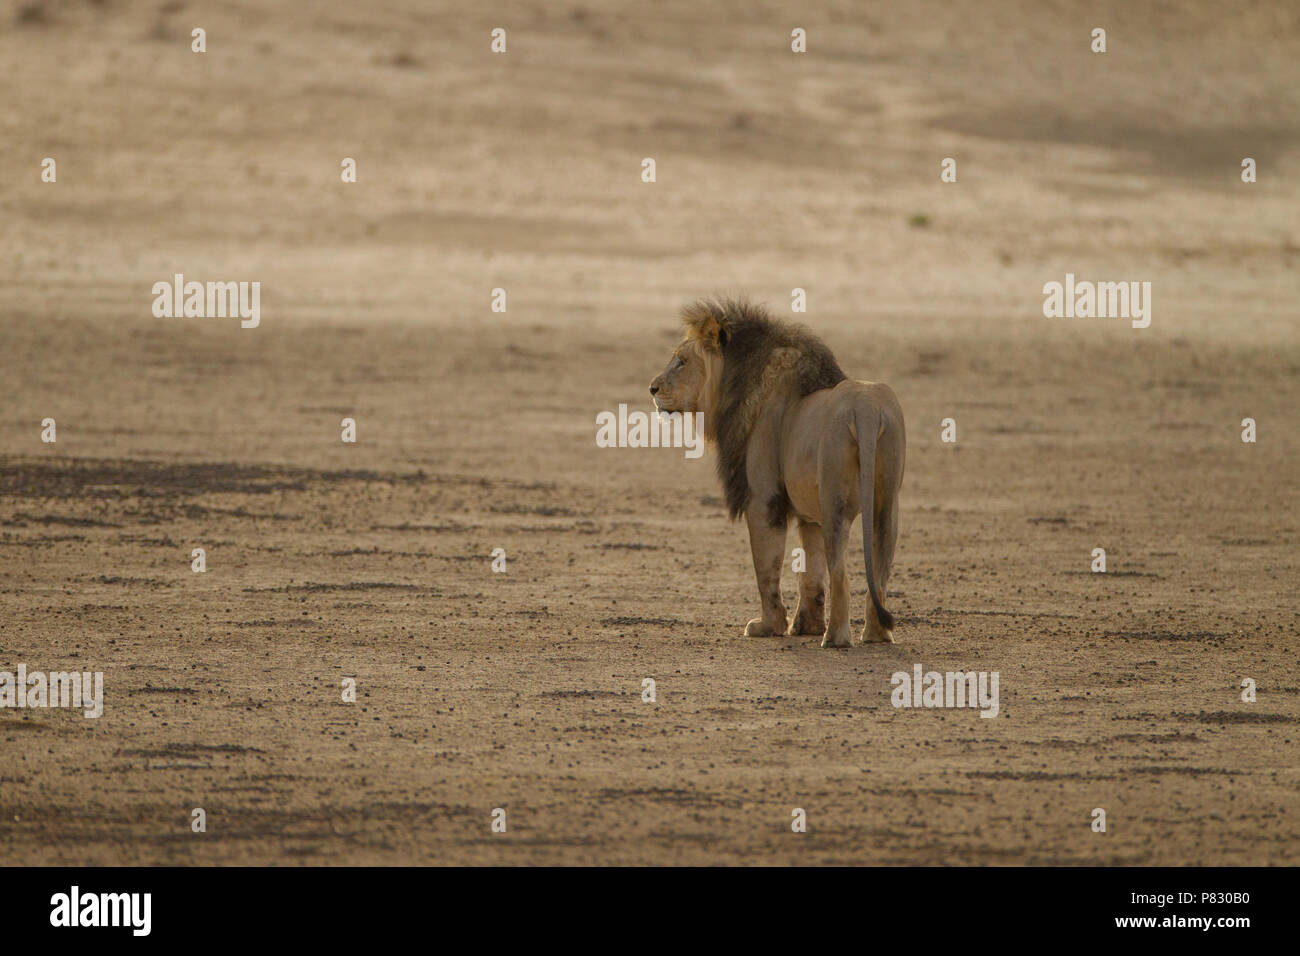 Desert lion with black mane patrolling for food Kalahari Stock Photo